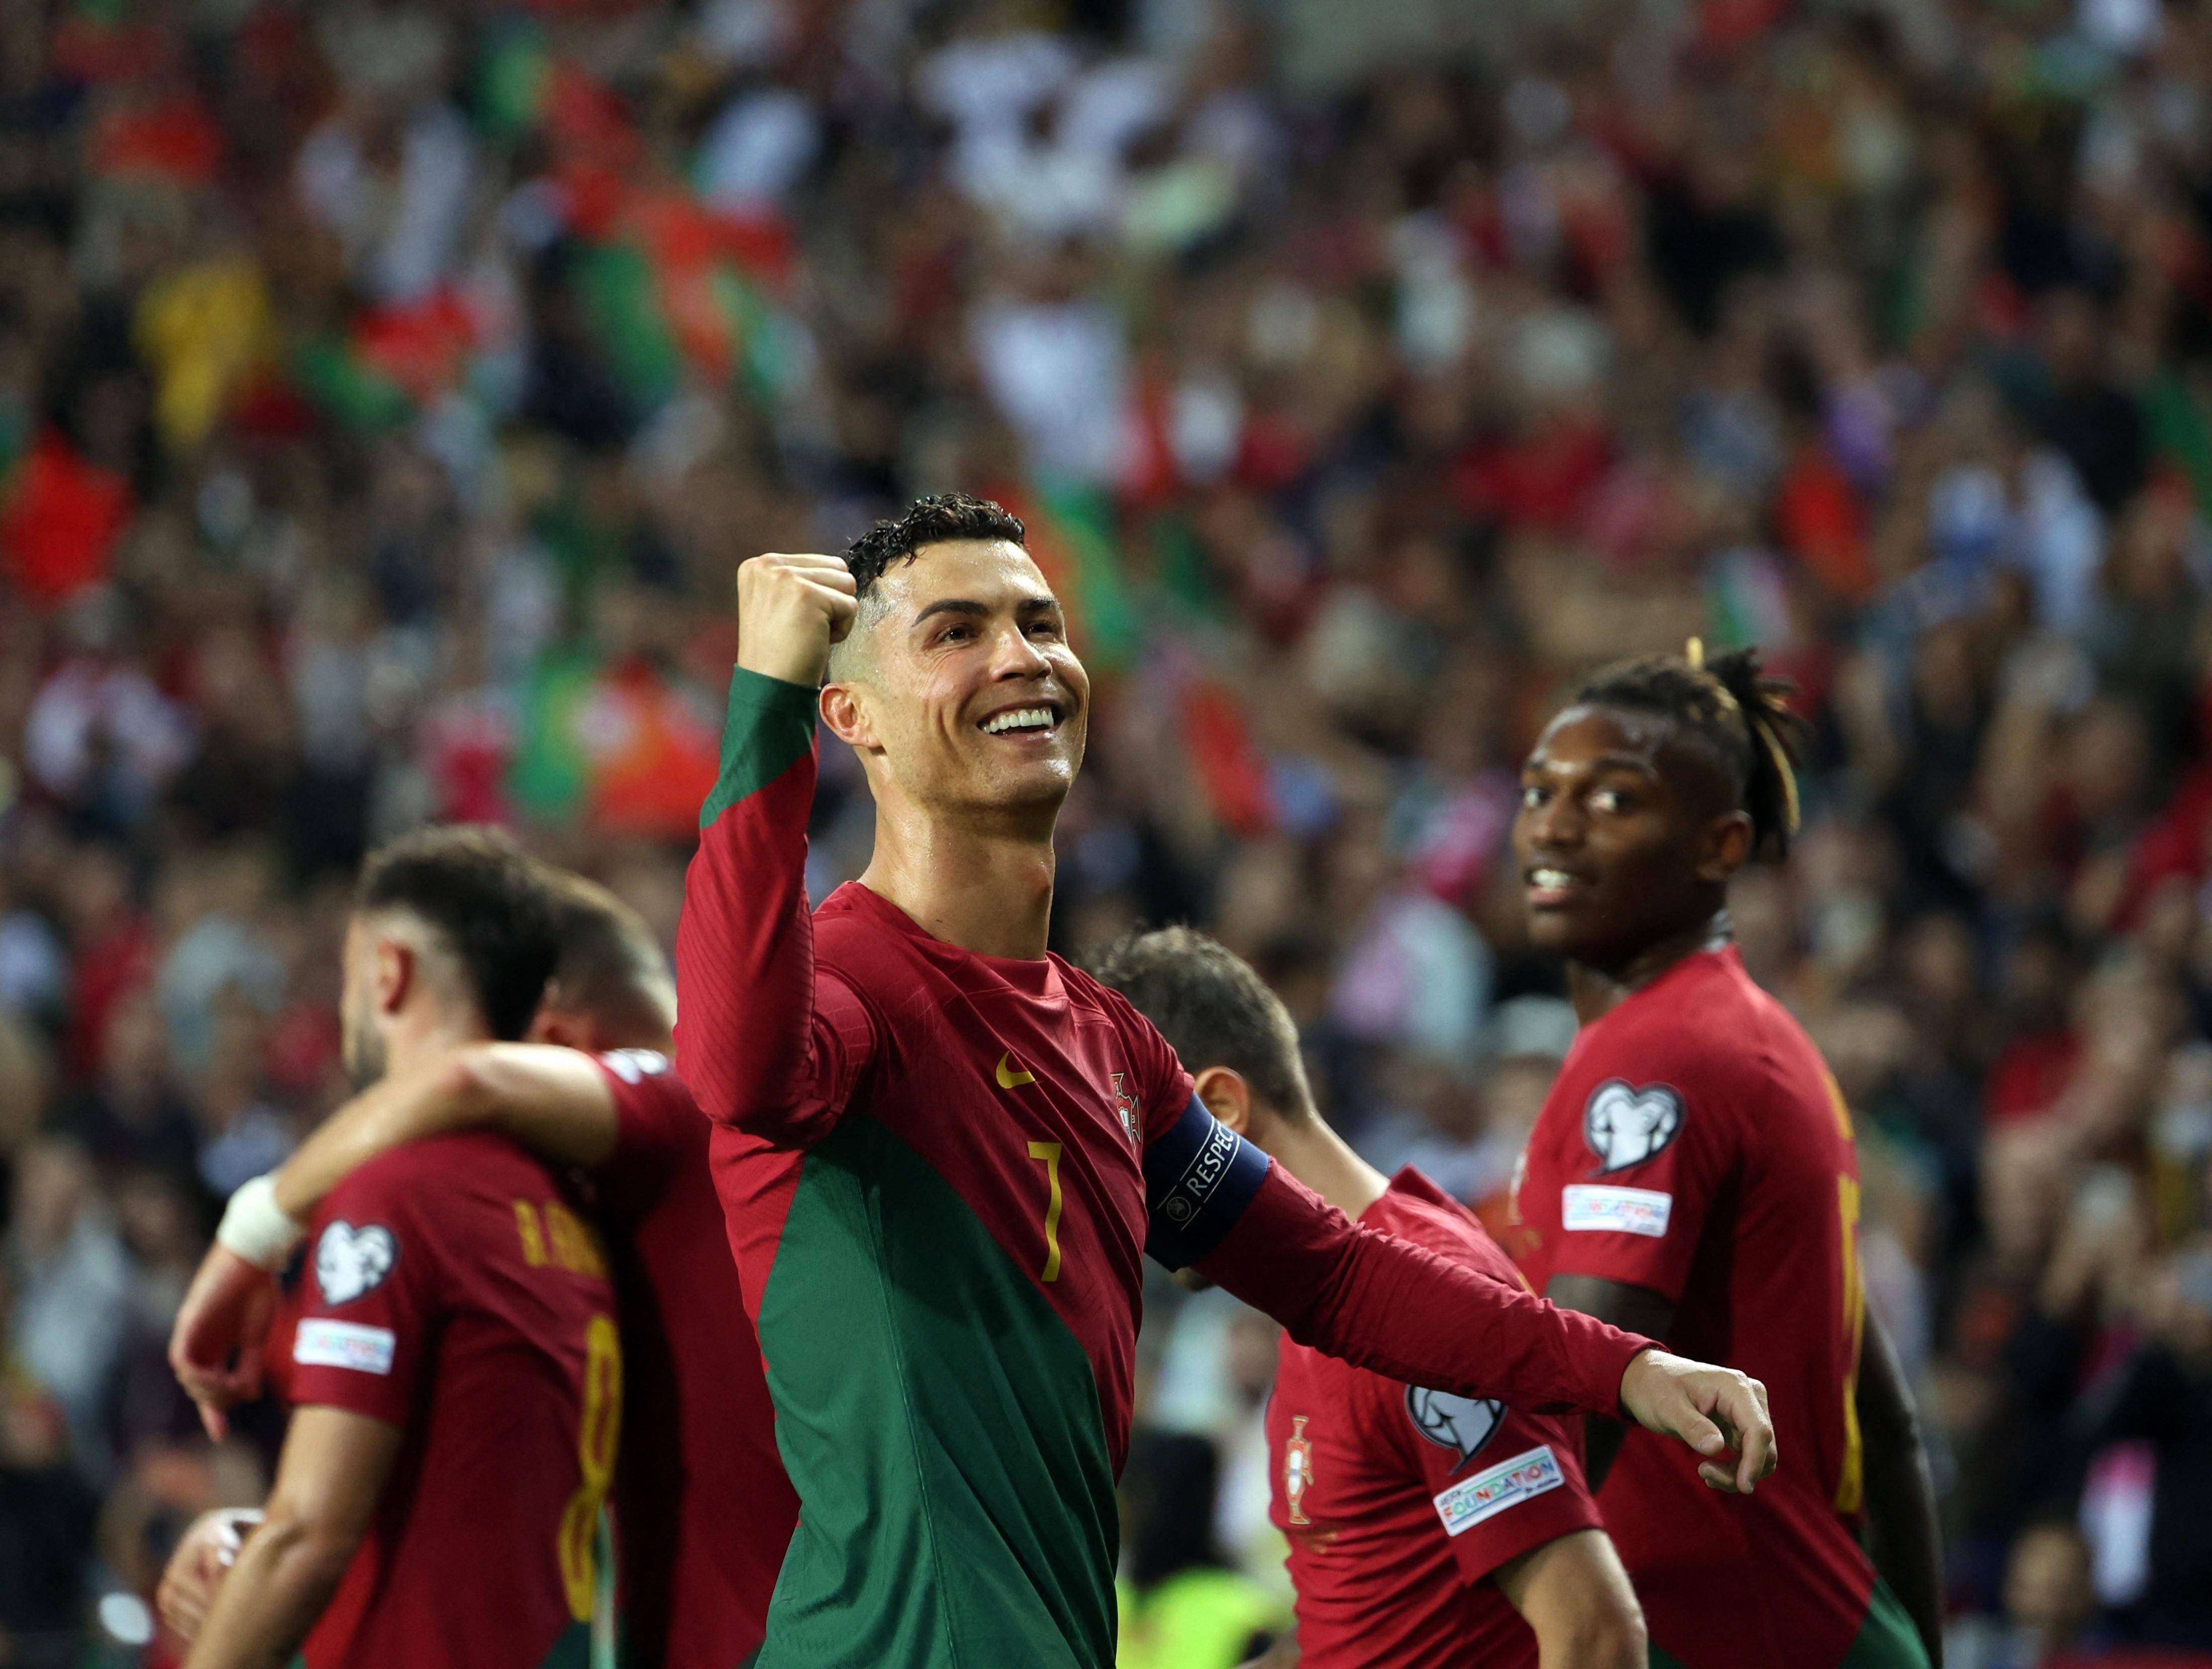 葡萄牙有可能再次赢得欧洲杯 很自豪能参加六届欧洲杯 C罗